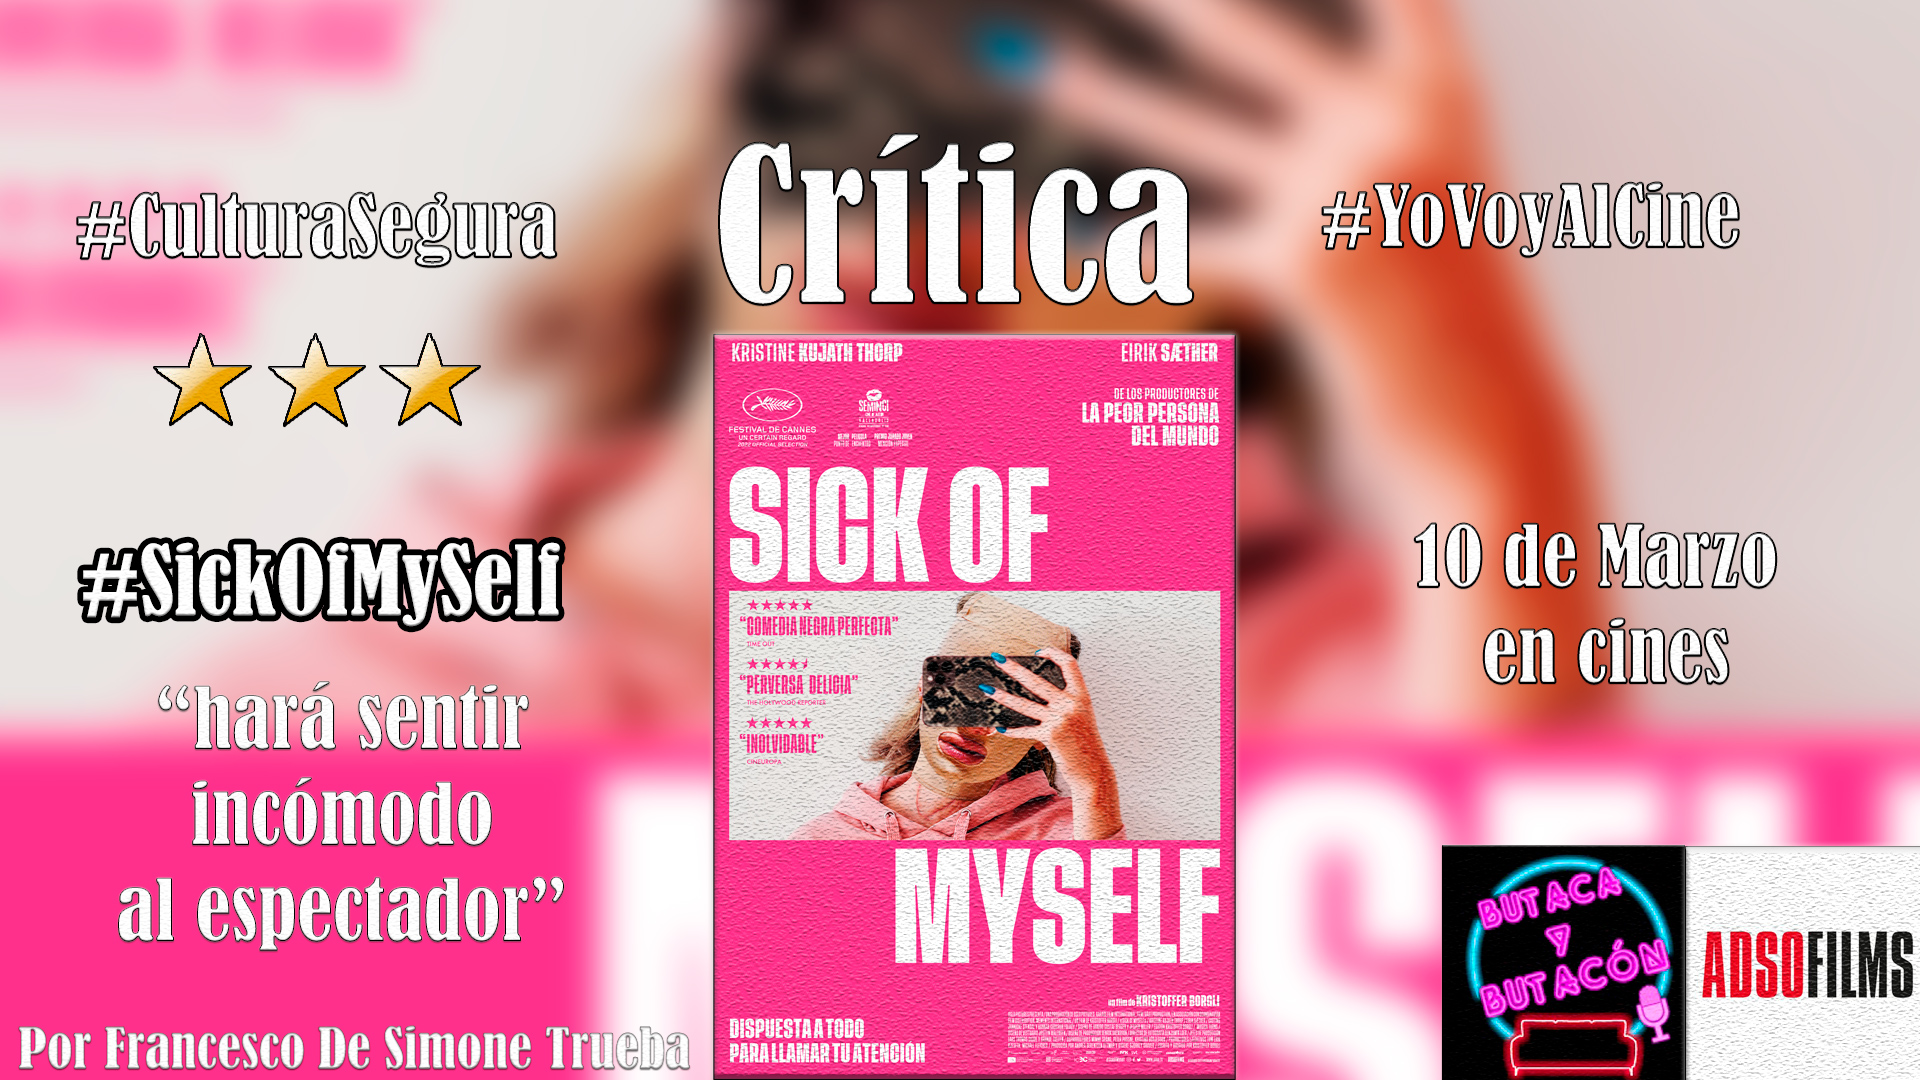 'Sick of myself': Narcisista en sí misma